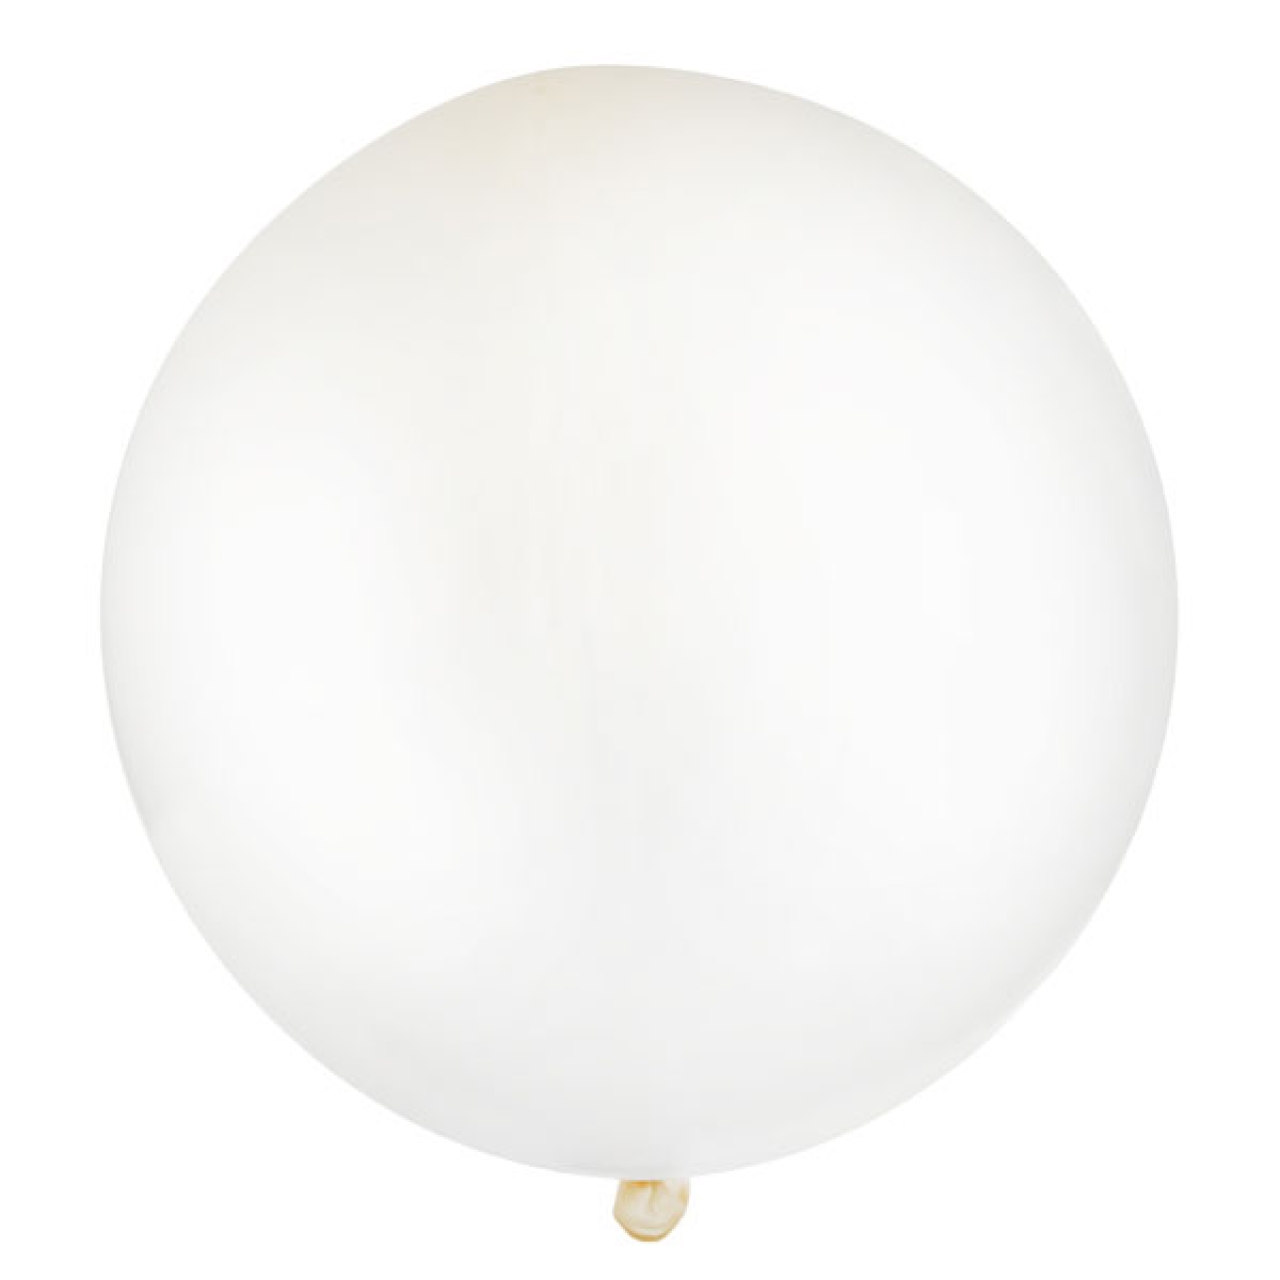 Transparente Luftballon